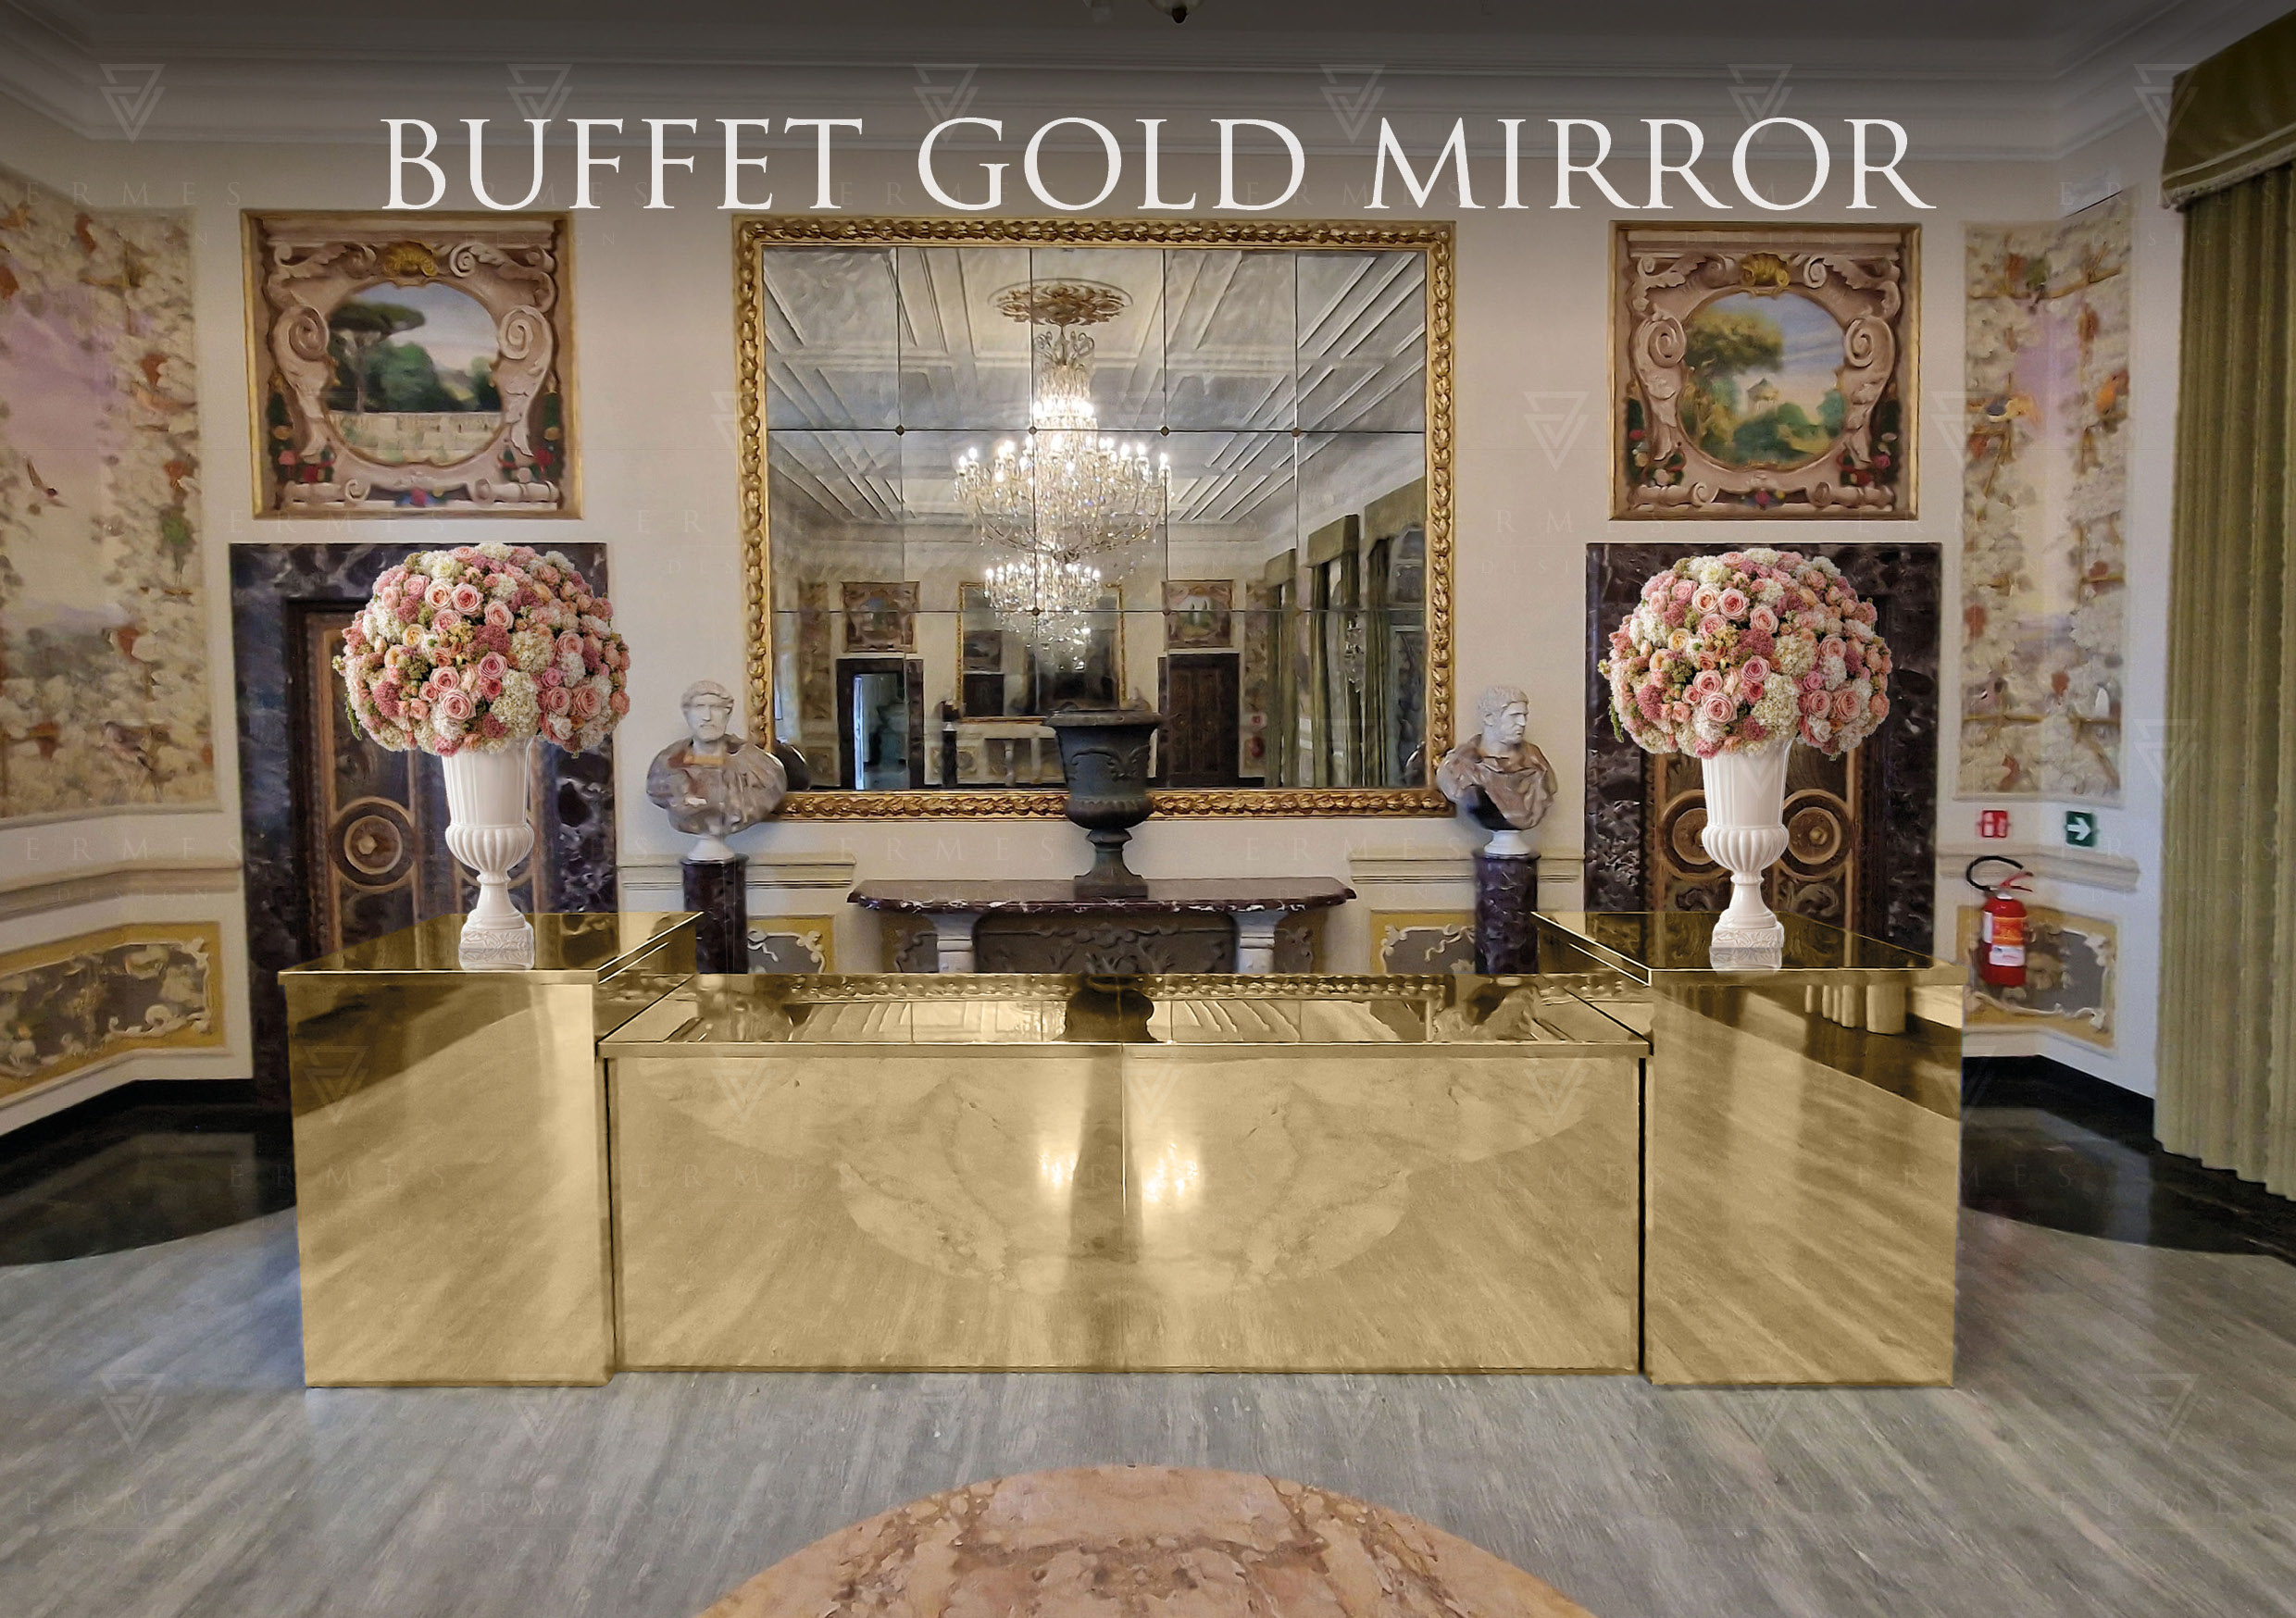 Buffet gold mirror